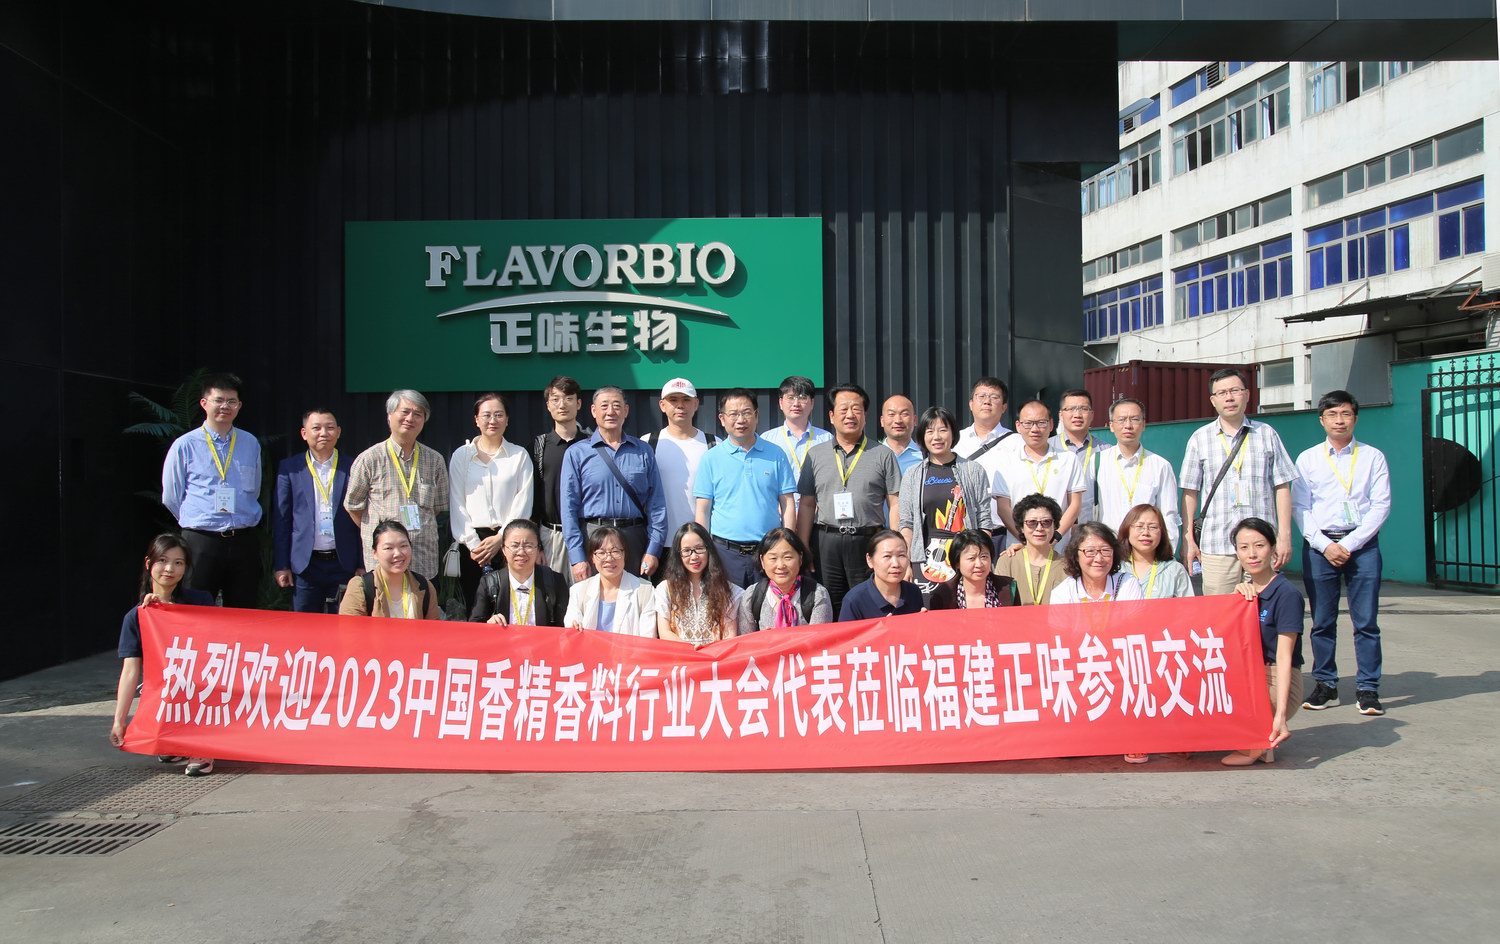 5月(yuè)25日中國香精香料行業代表 赴正味公司與馬尾船政文化(huà)城(chéng)參觀訪問